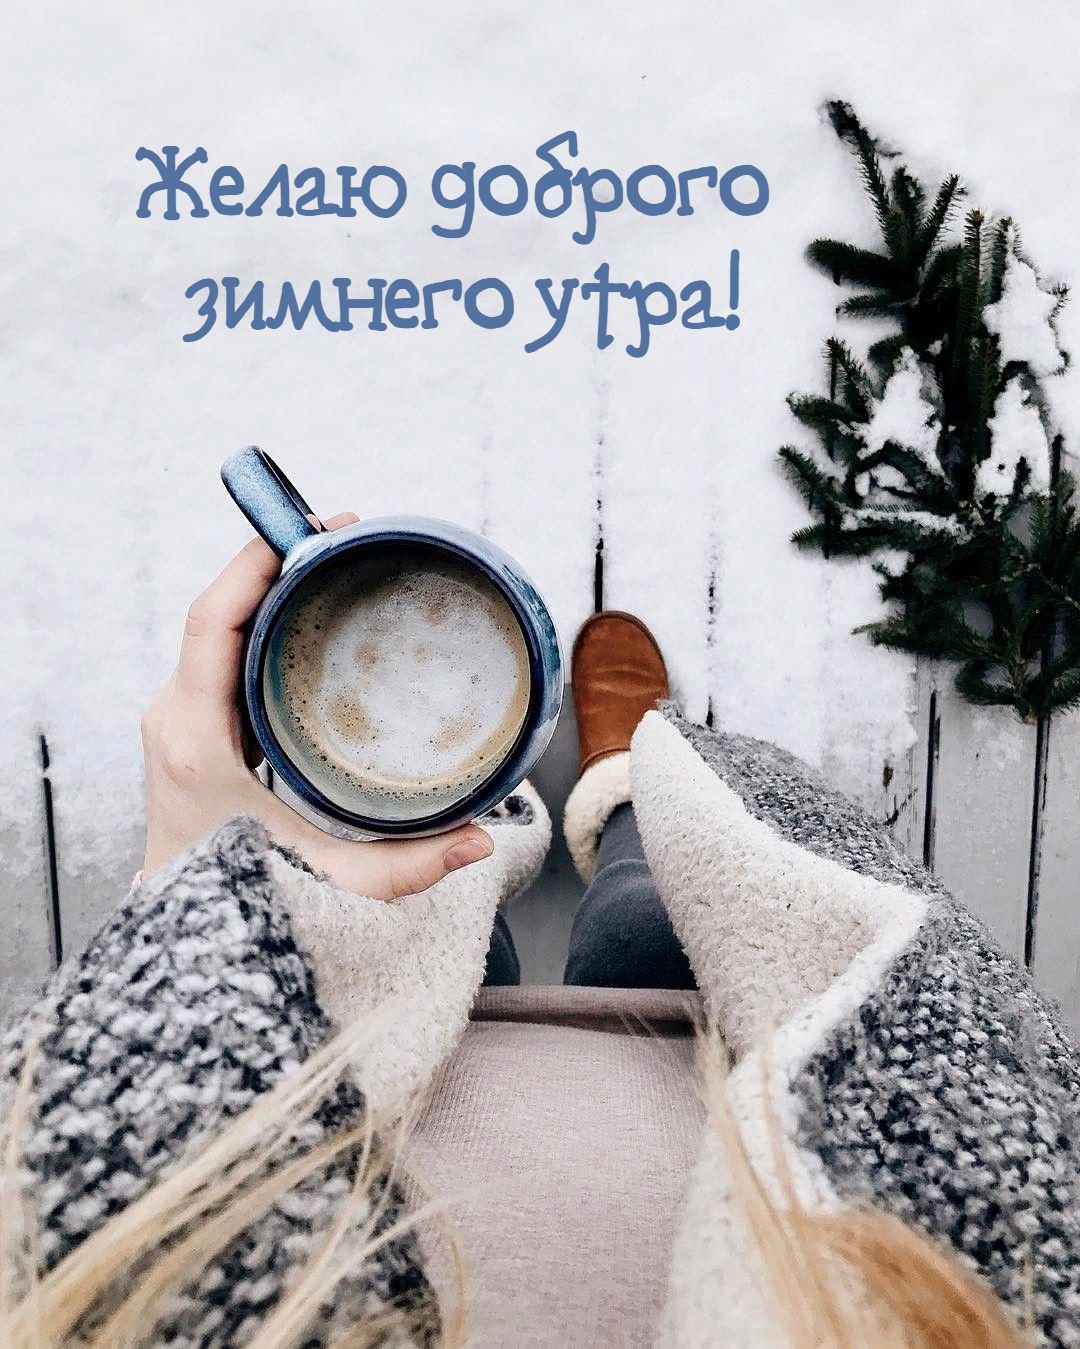 Желаю доброго  зимнего утра!